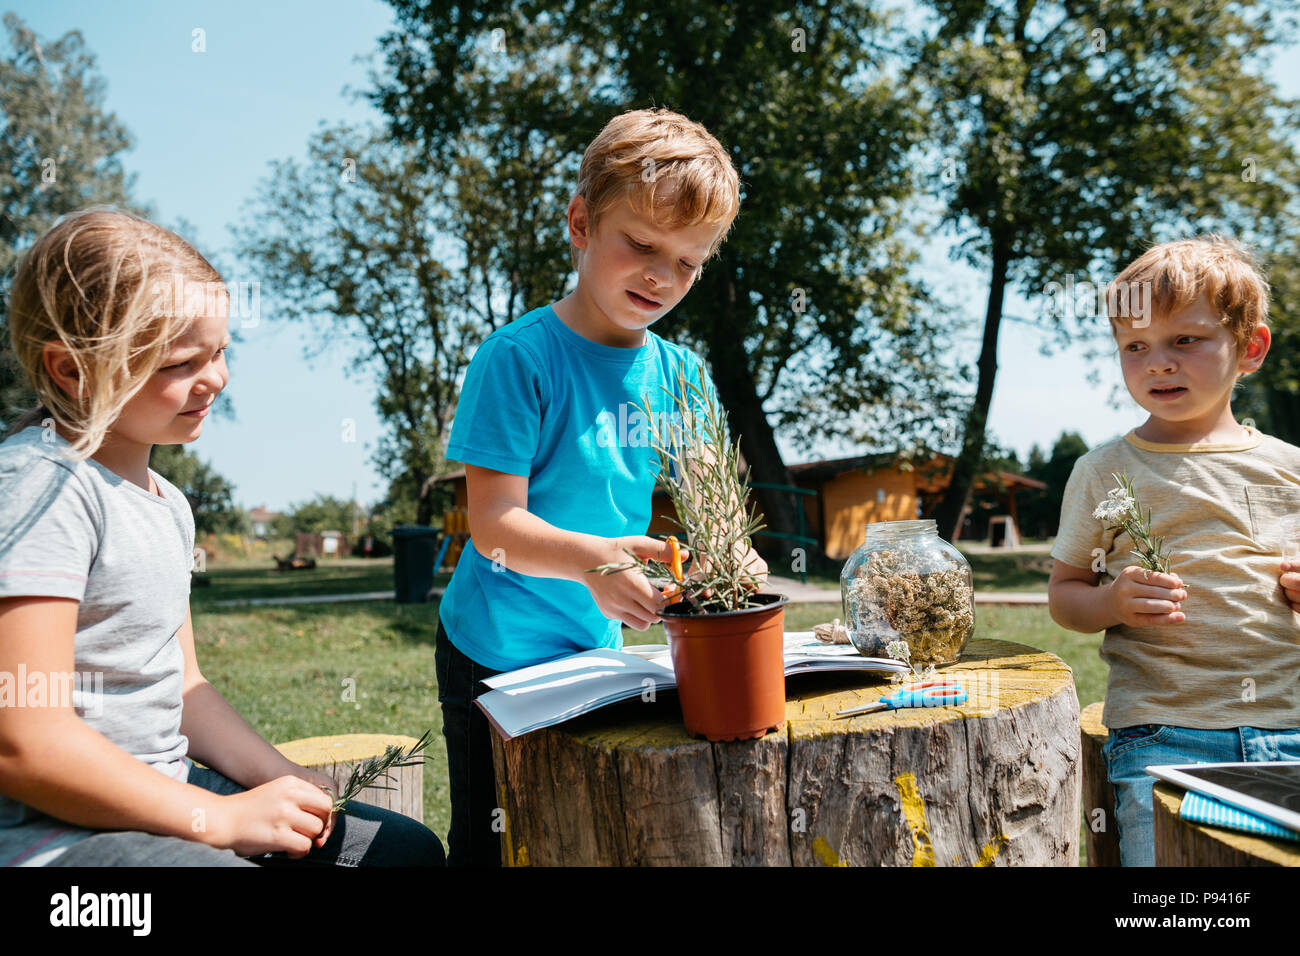 Homeschooling - i bambini che lavorano su un progetto ambientale al di fuori in un parco. Giovani studenti imparare a conoscere le piante e le erbe aromatiche insieme. Foto Stock